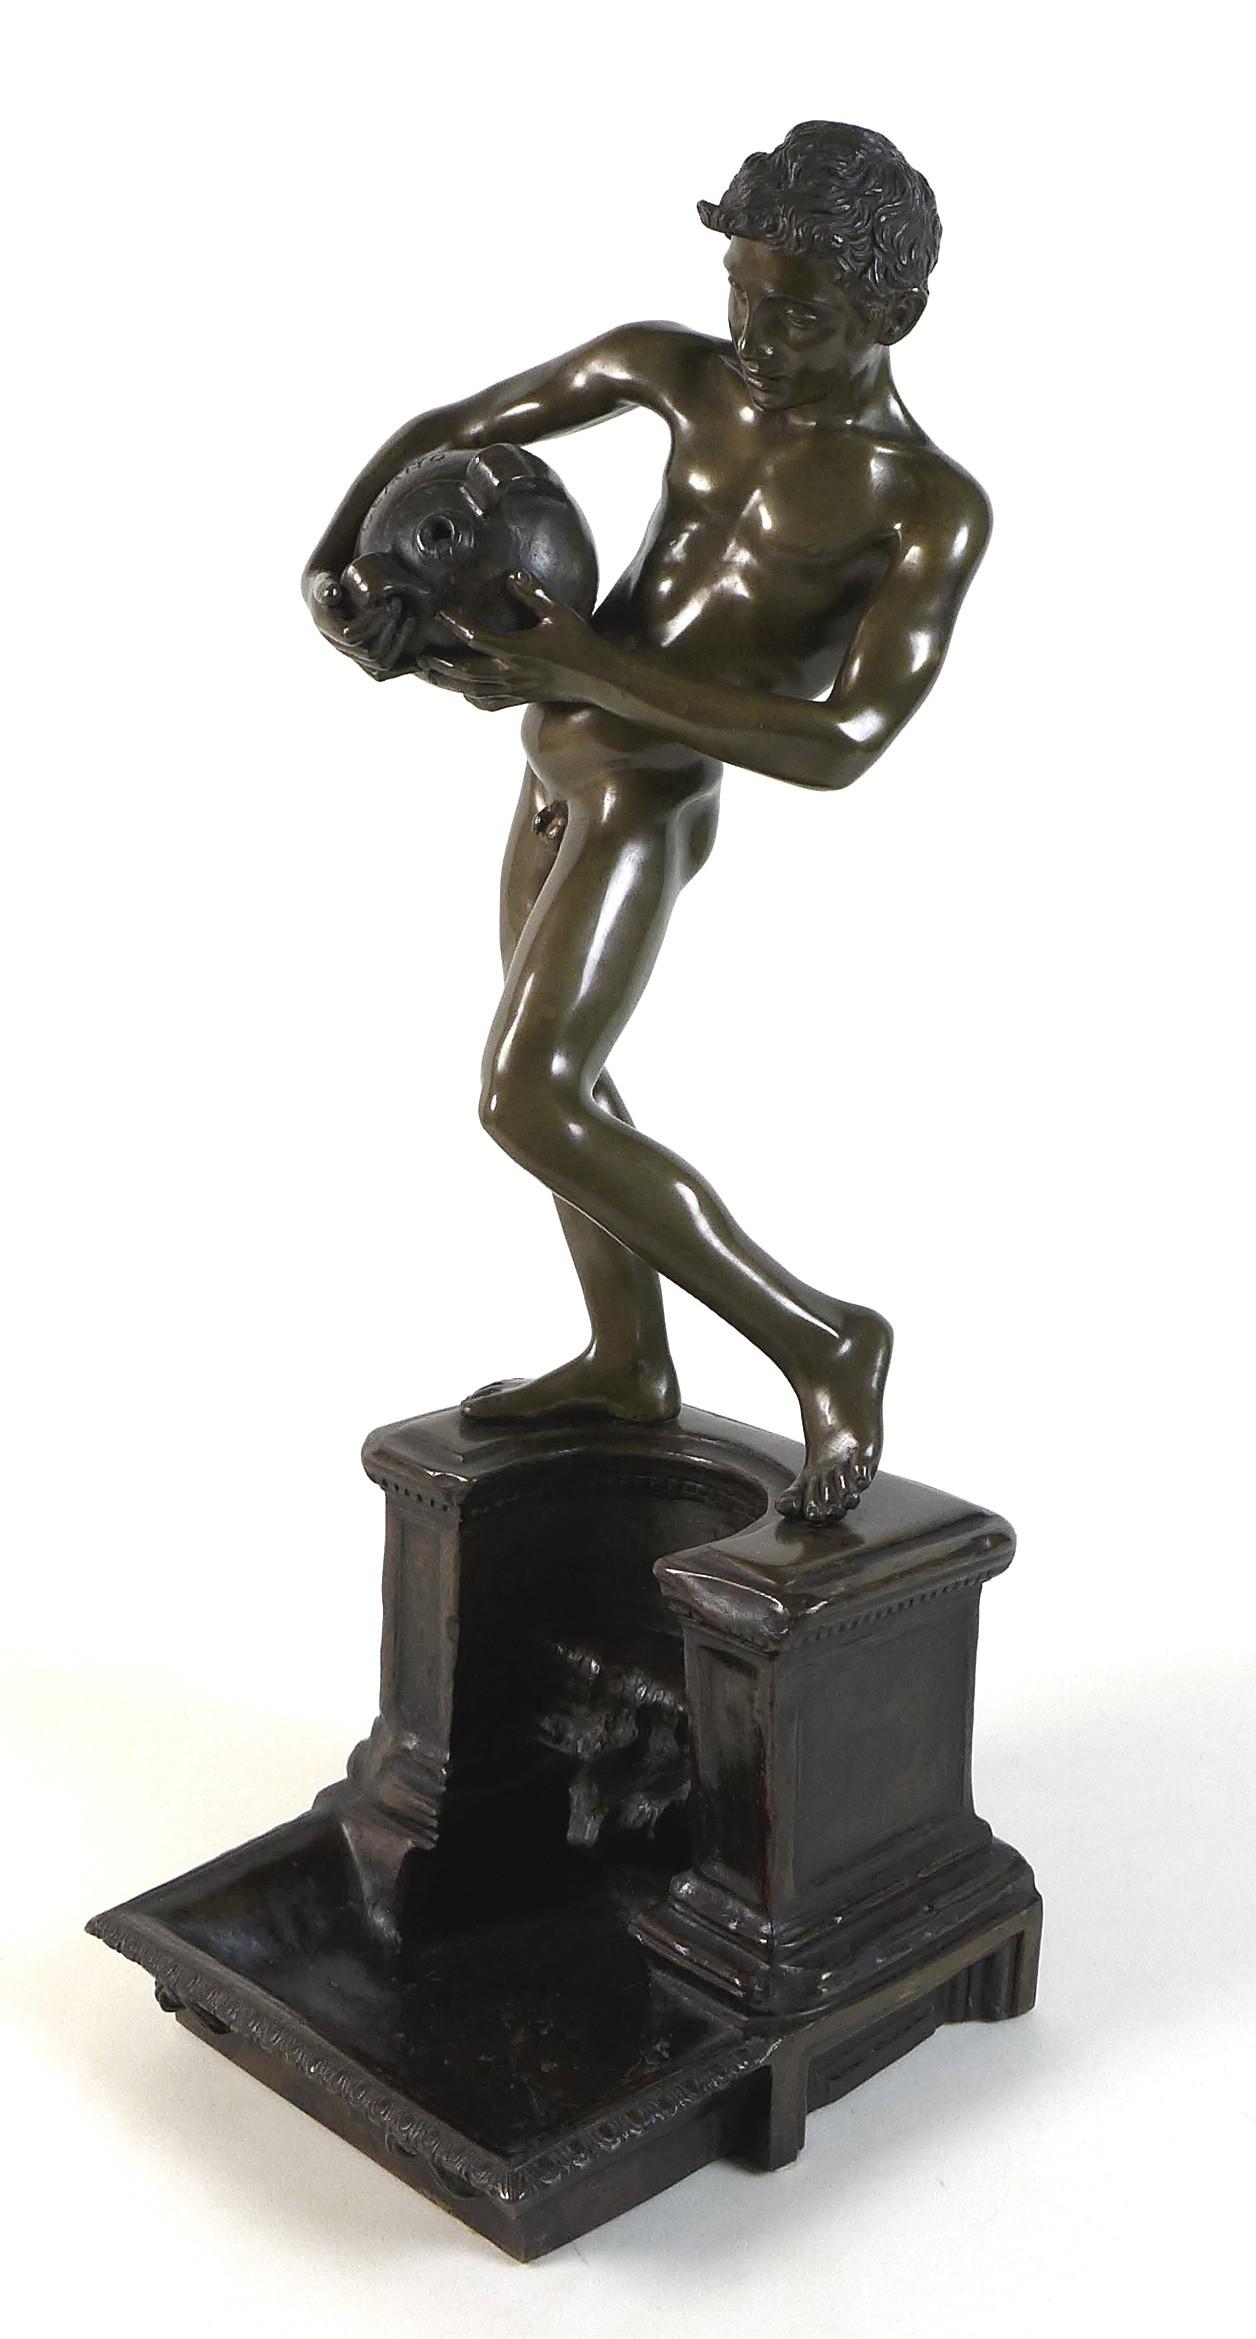 Vincenzio Gemito (Italian 1852-1929): 'L'Acquaiolo' (The Water Carrier), a bronze figural